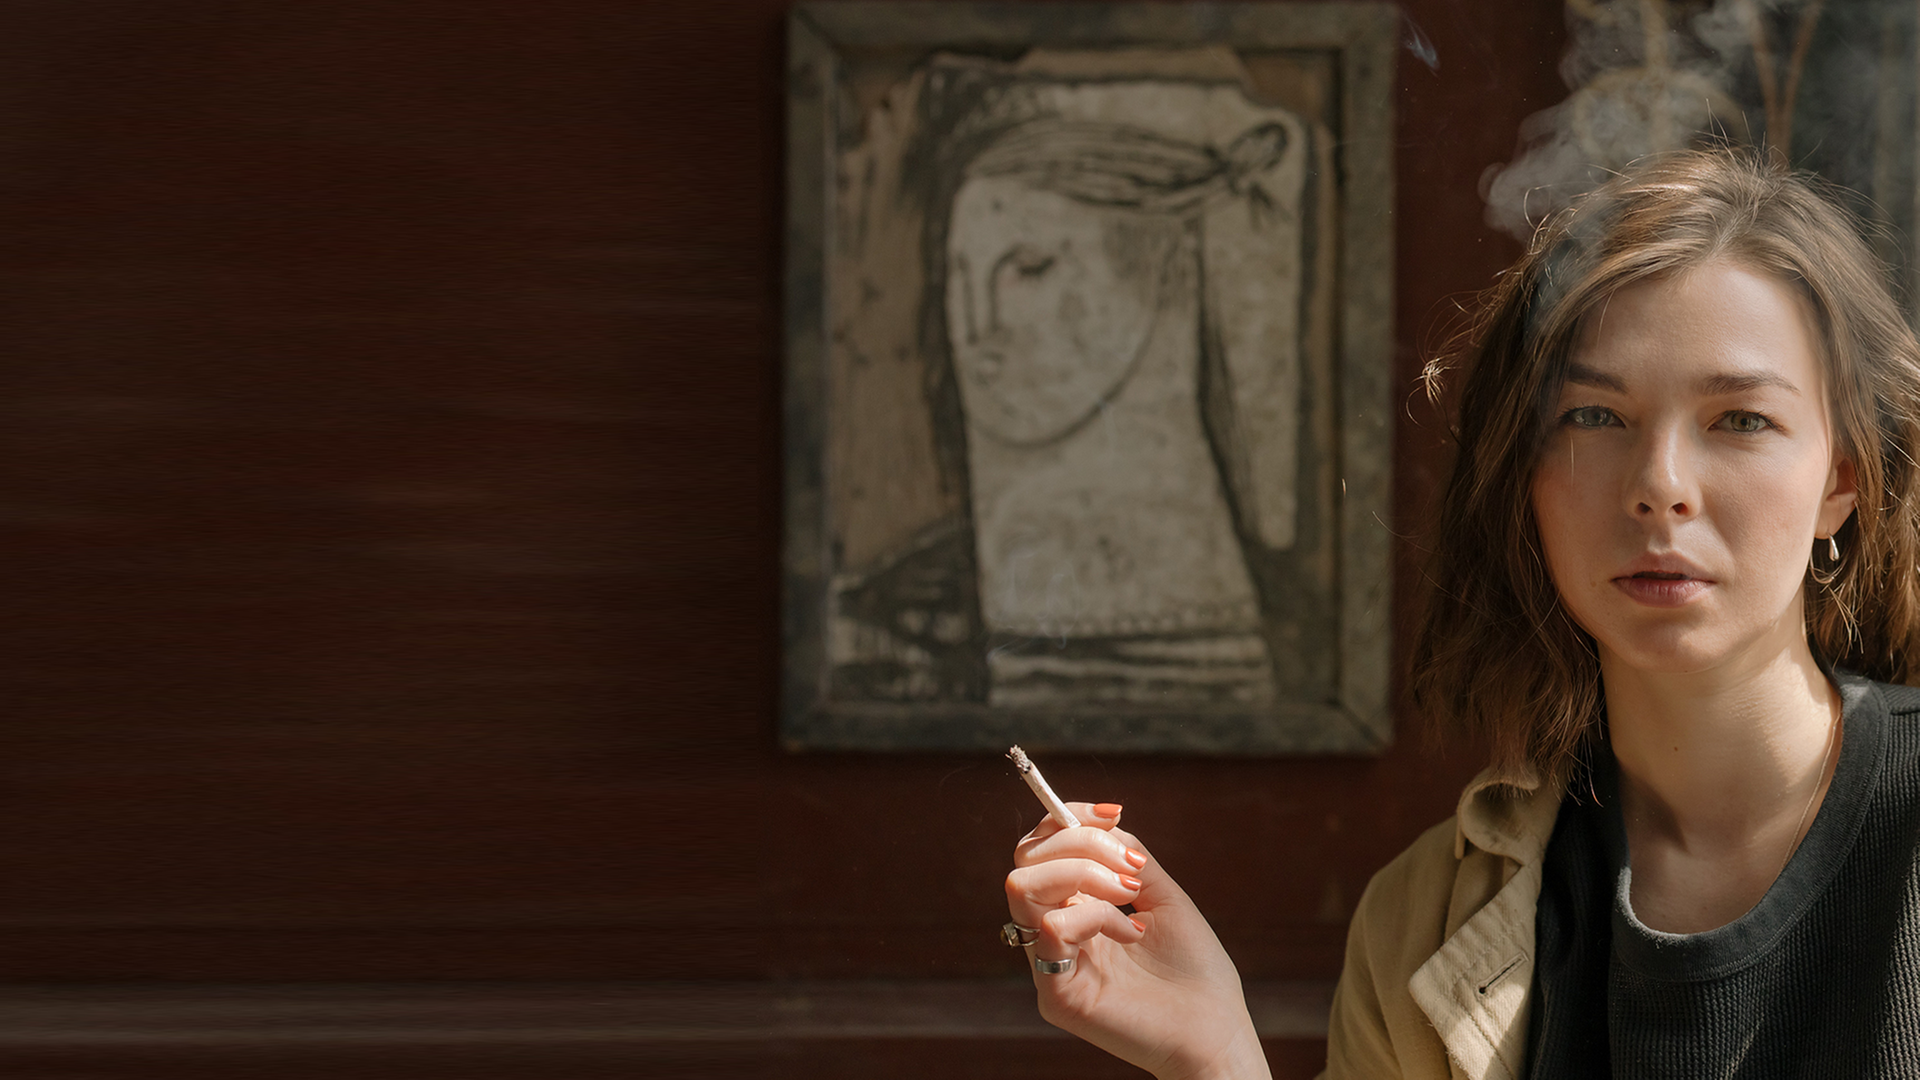 Eine junge Frau raucht vor einem gemalten Frauenporträt.